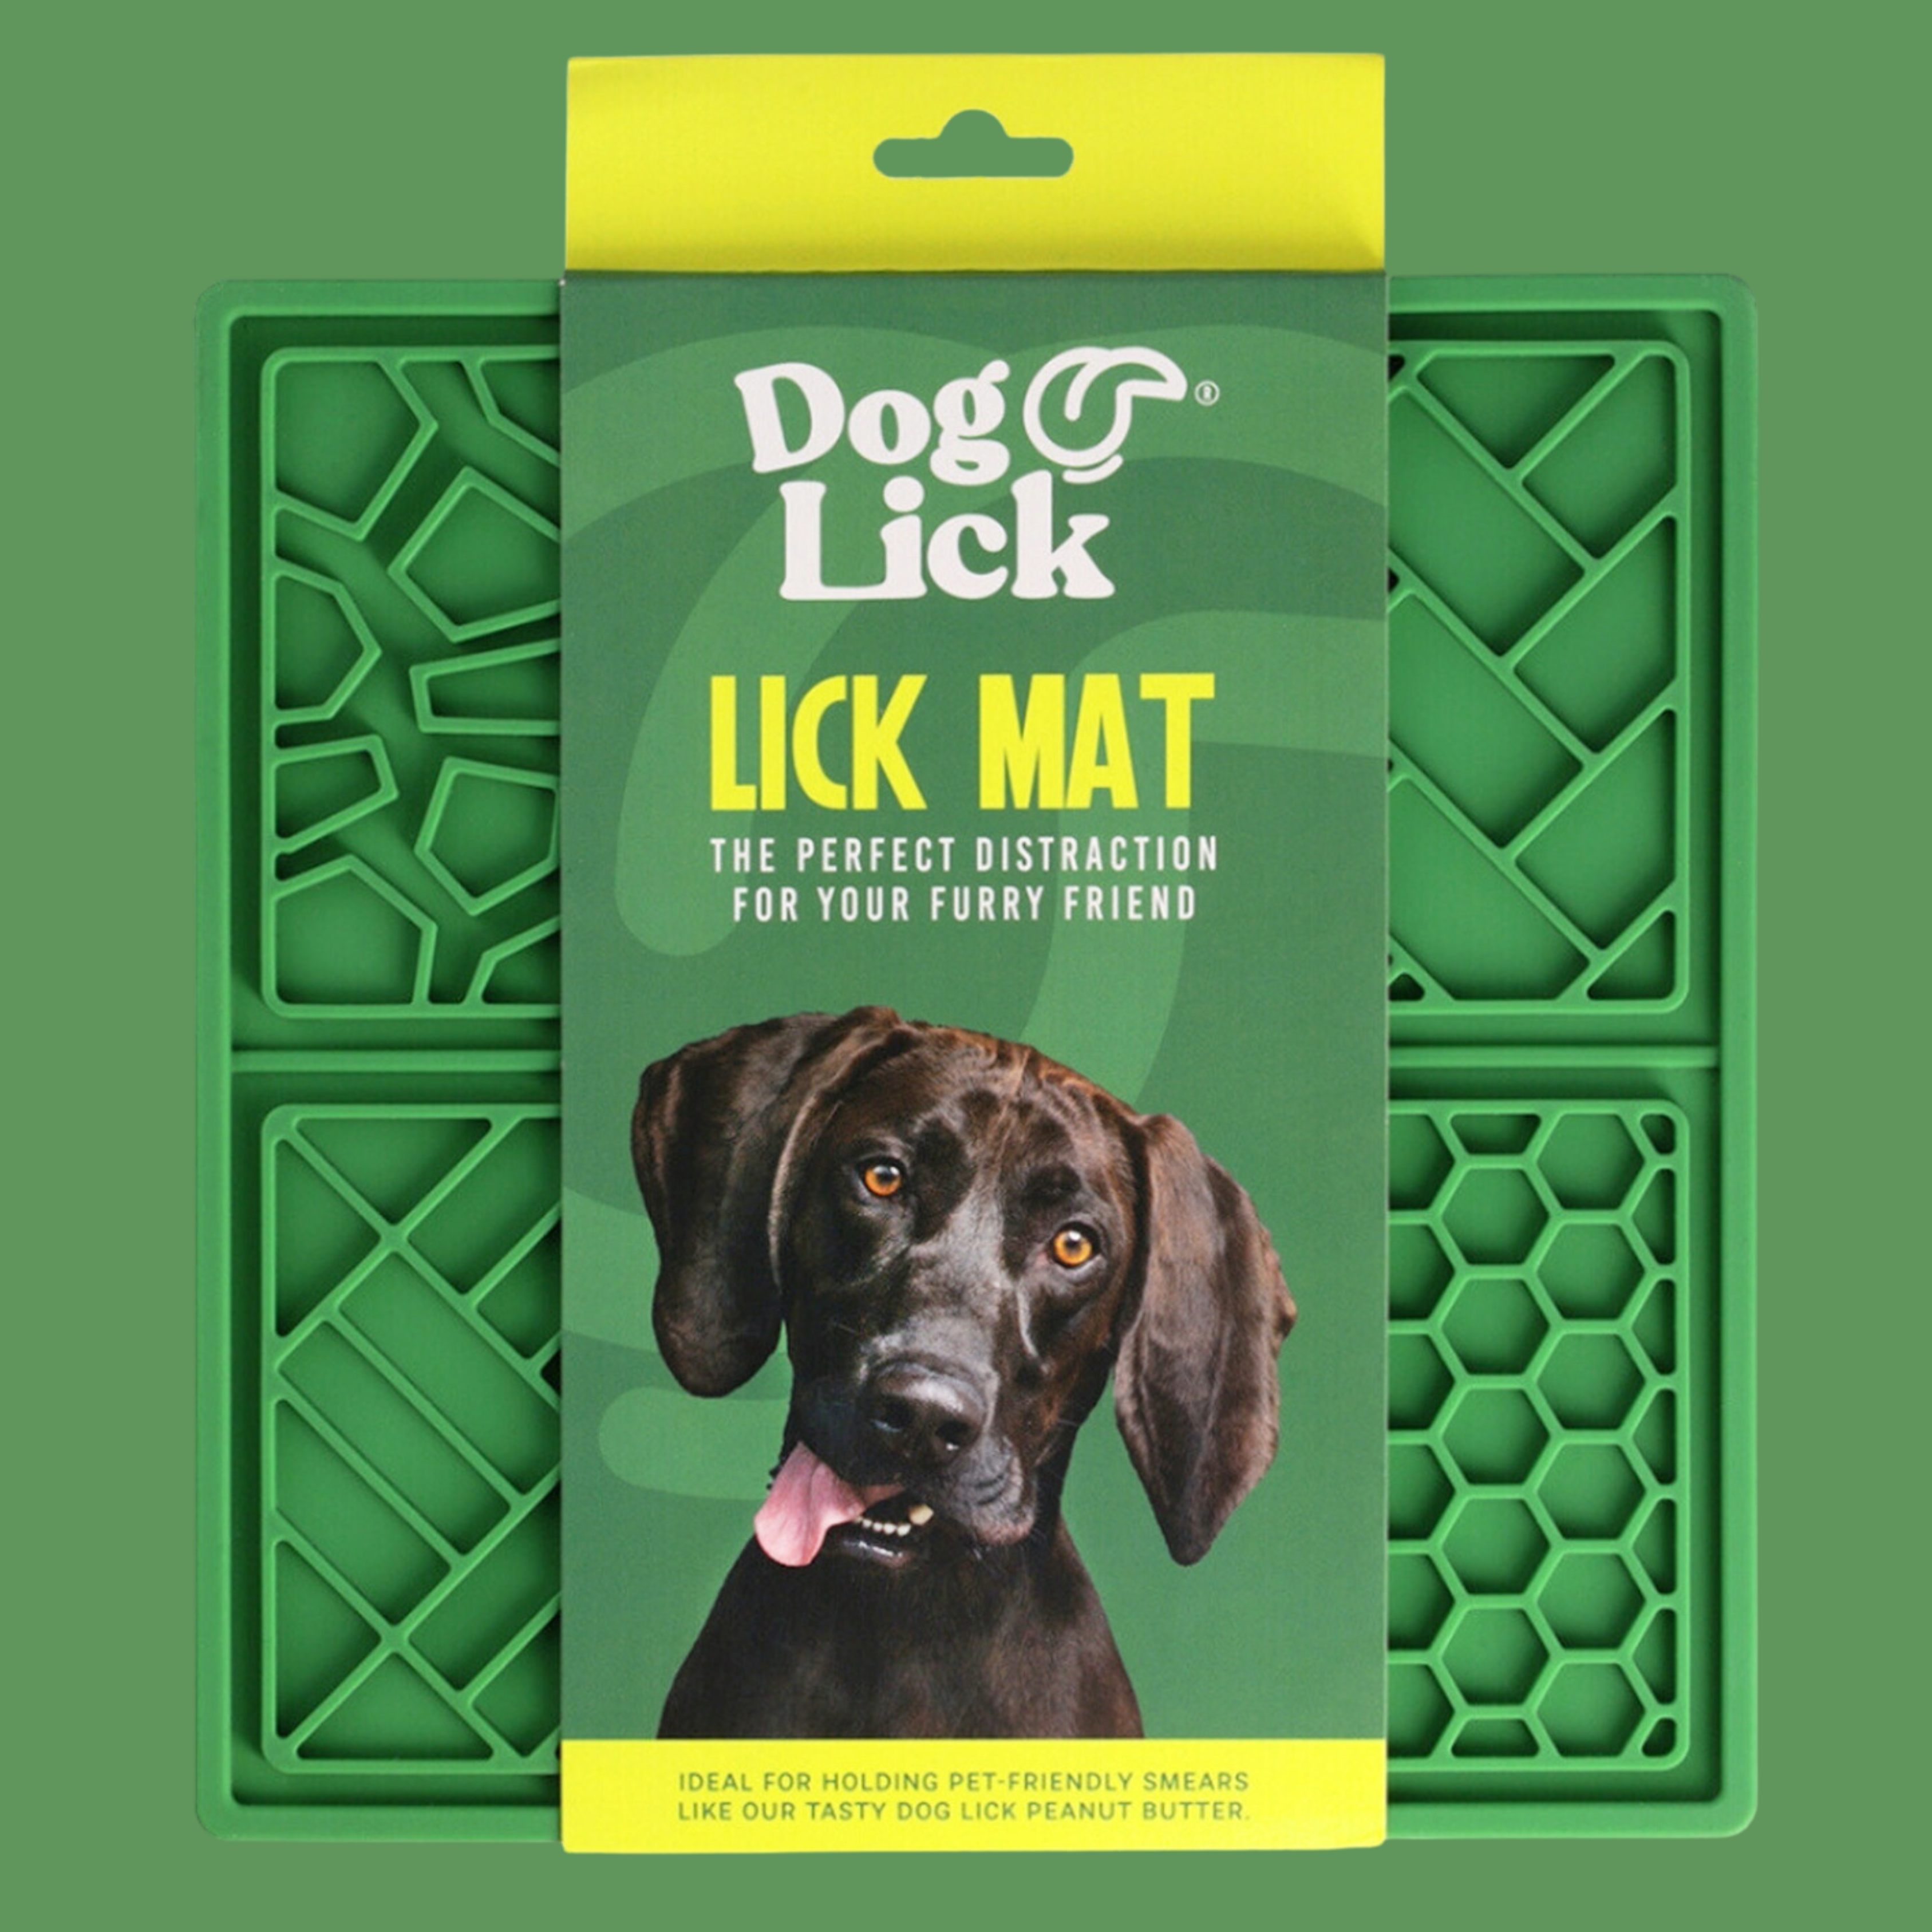 Dog Lick: Lick Mat